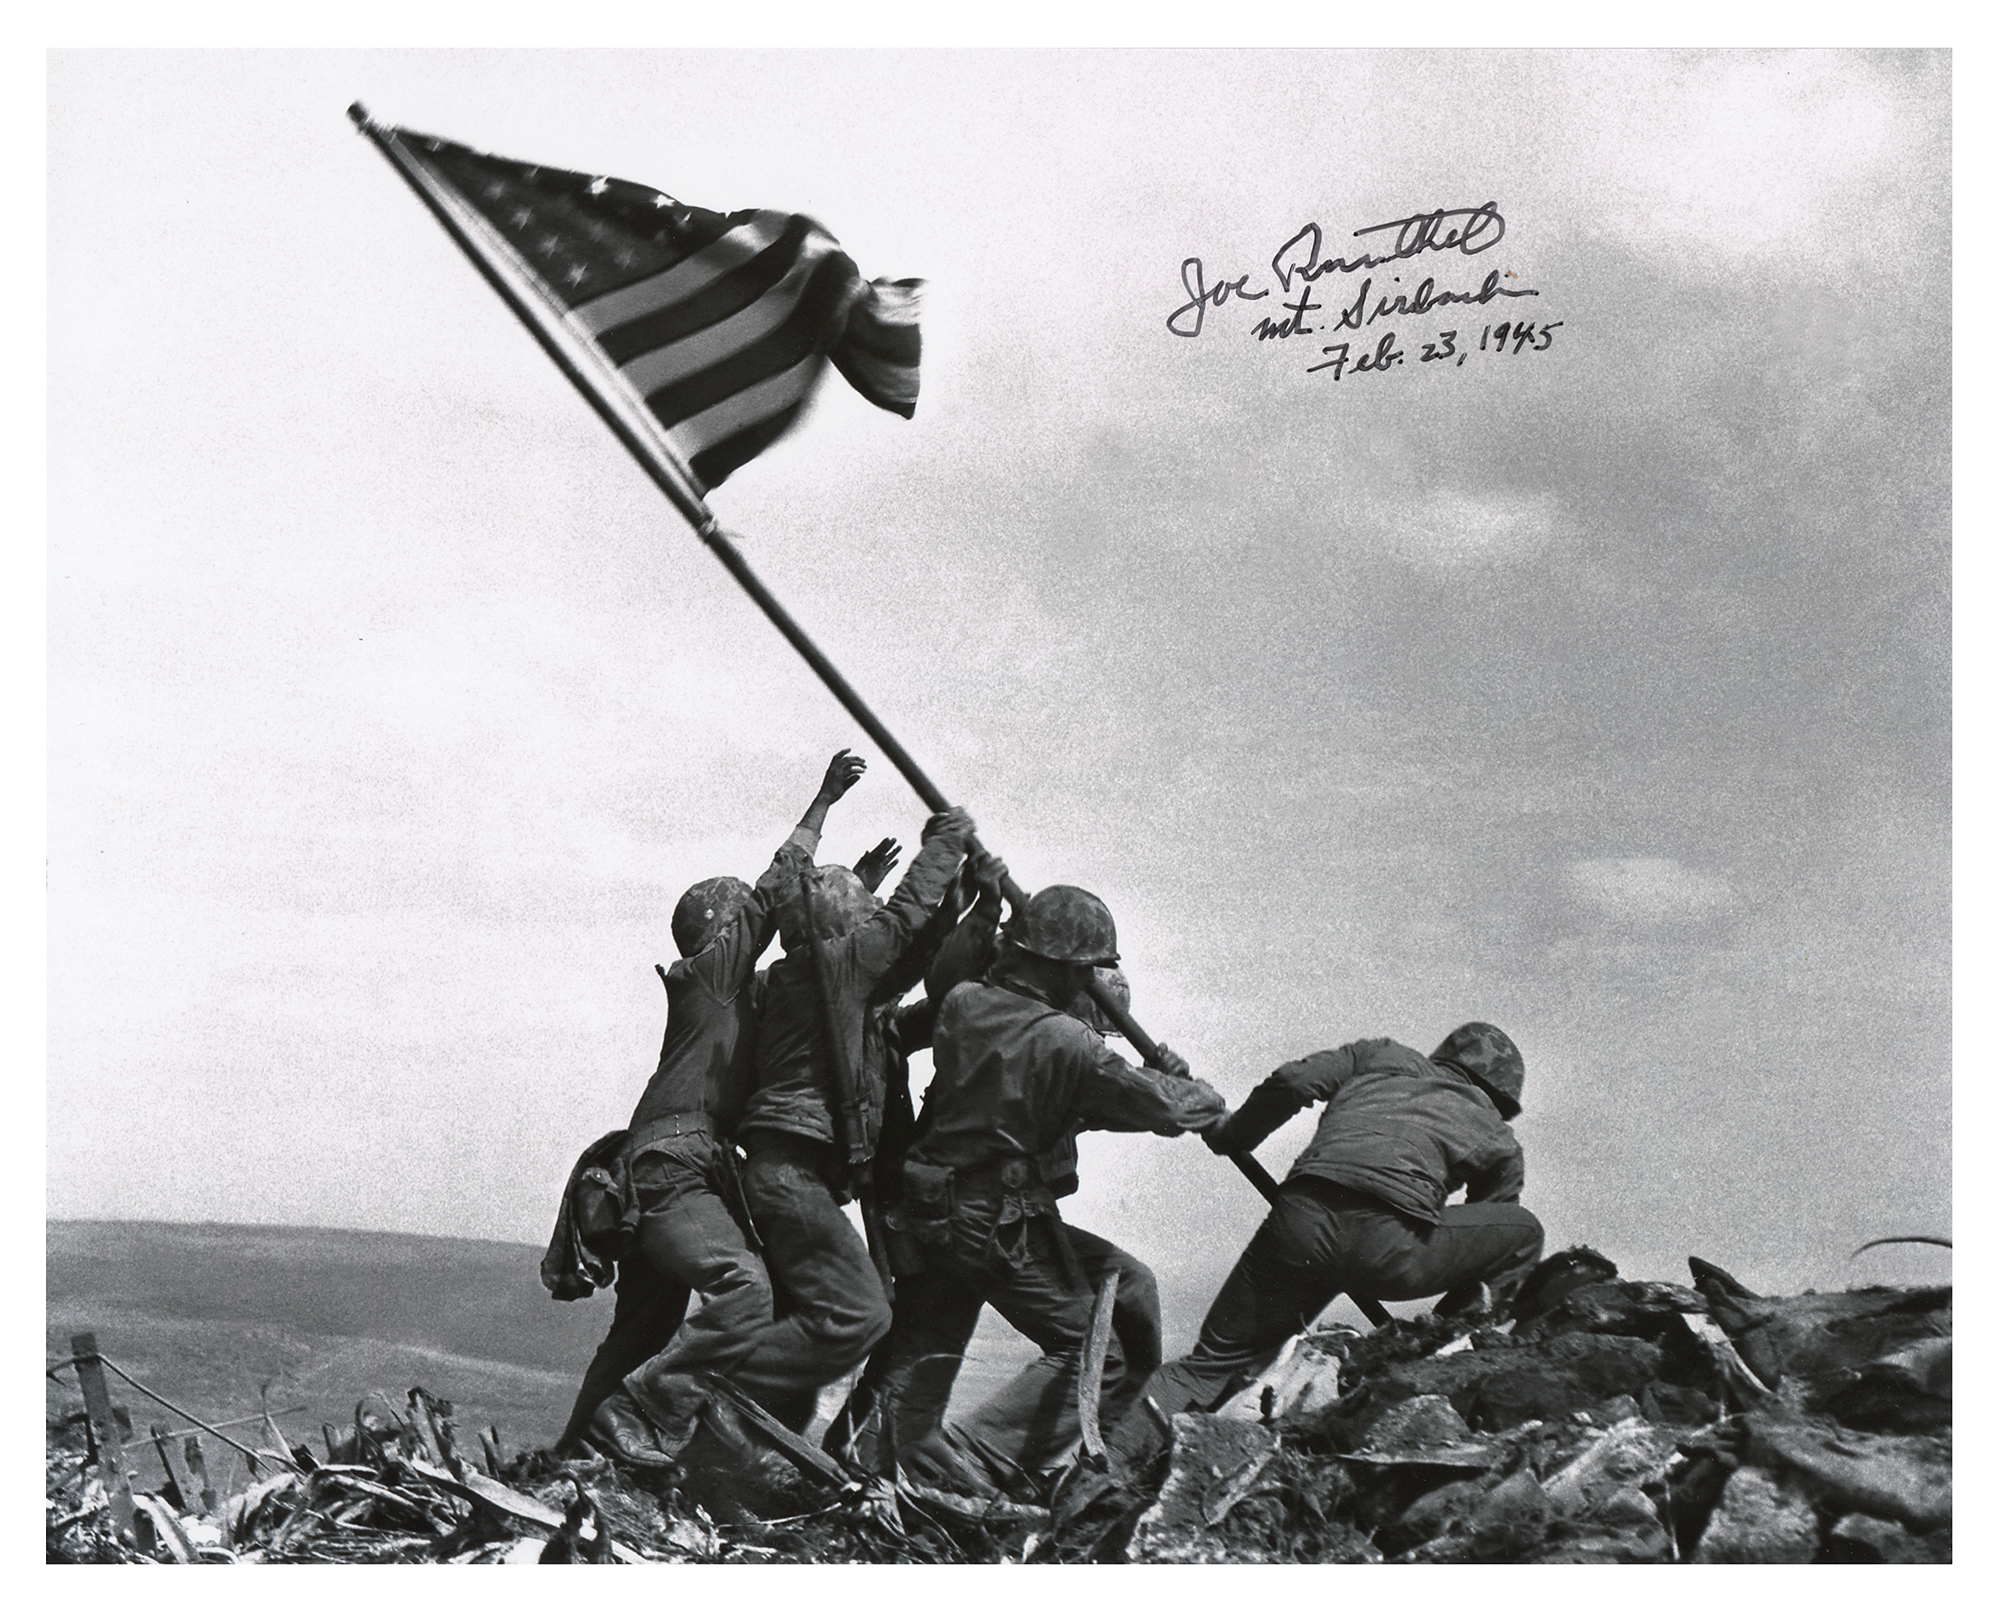 Lot #344 Iwo Jima: Joe Rosenthal